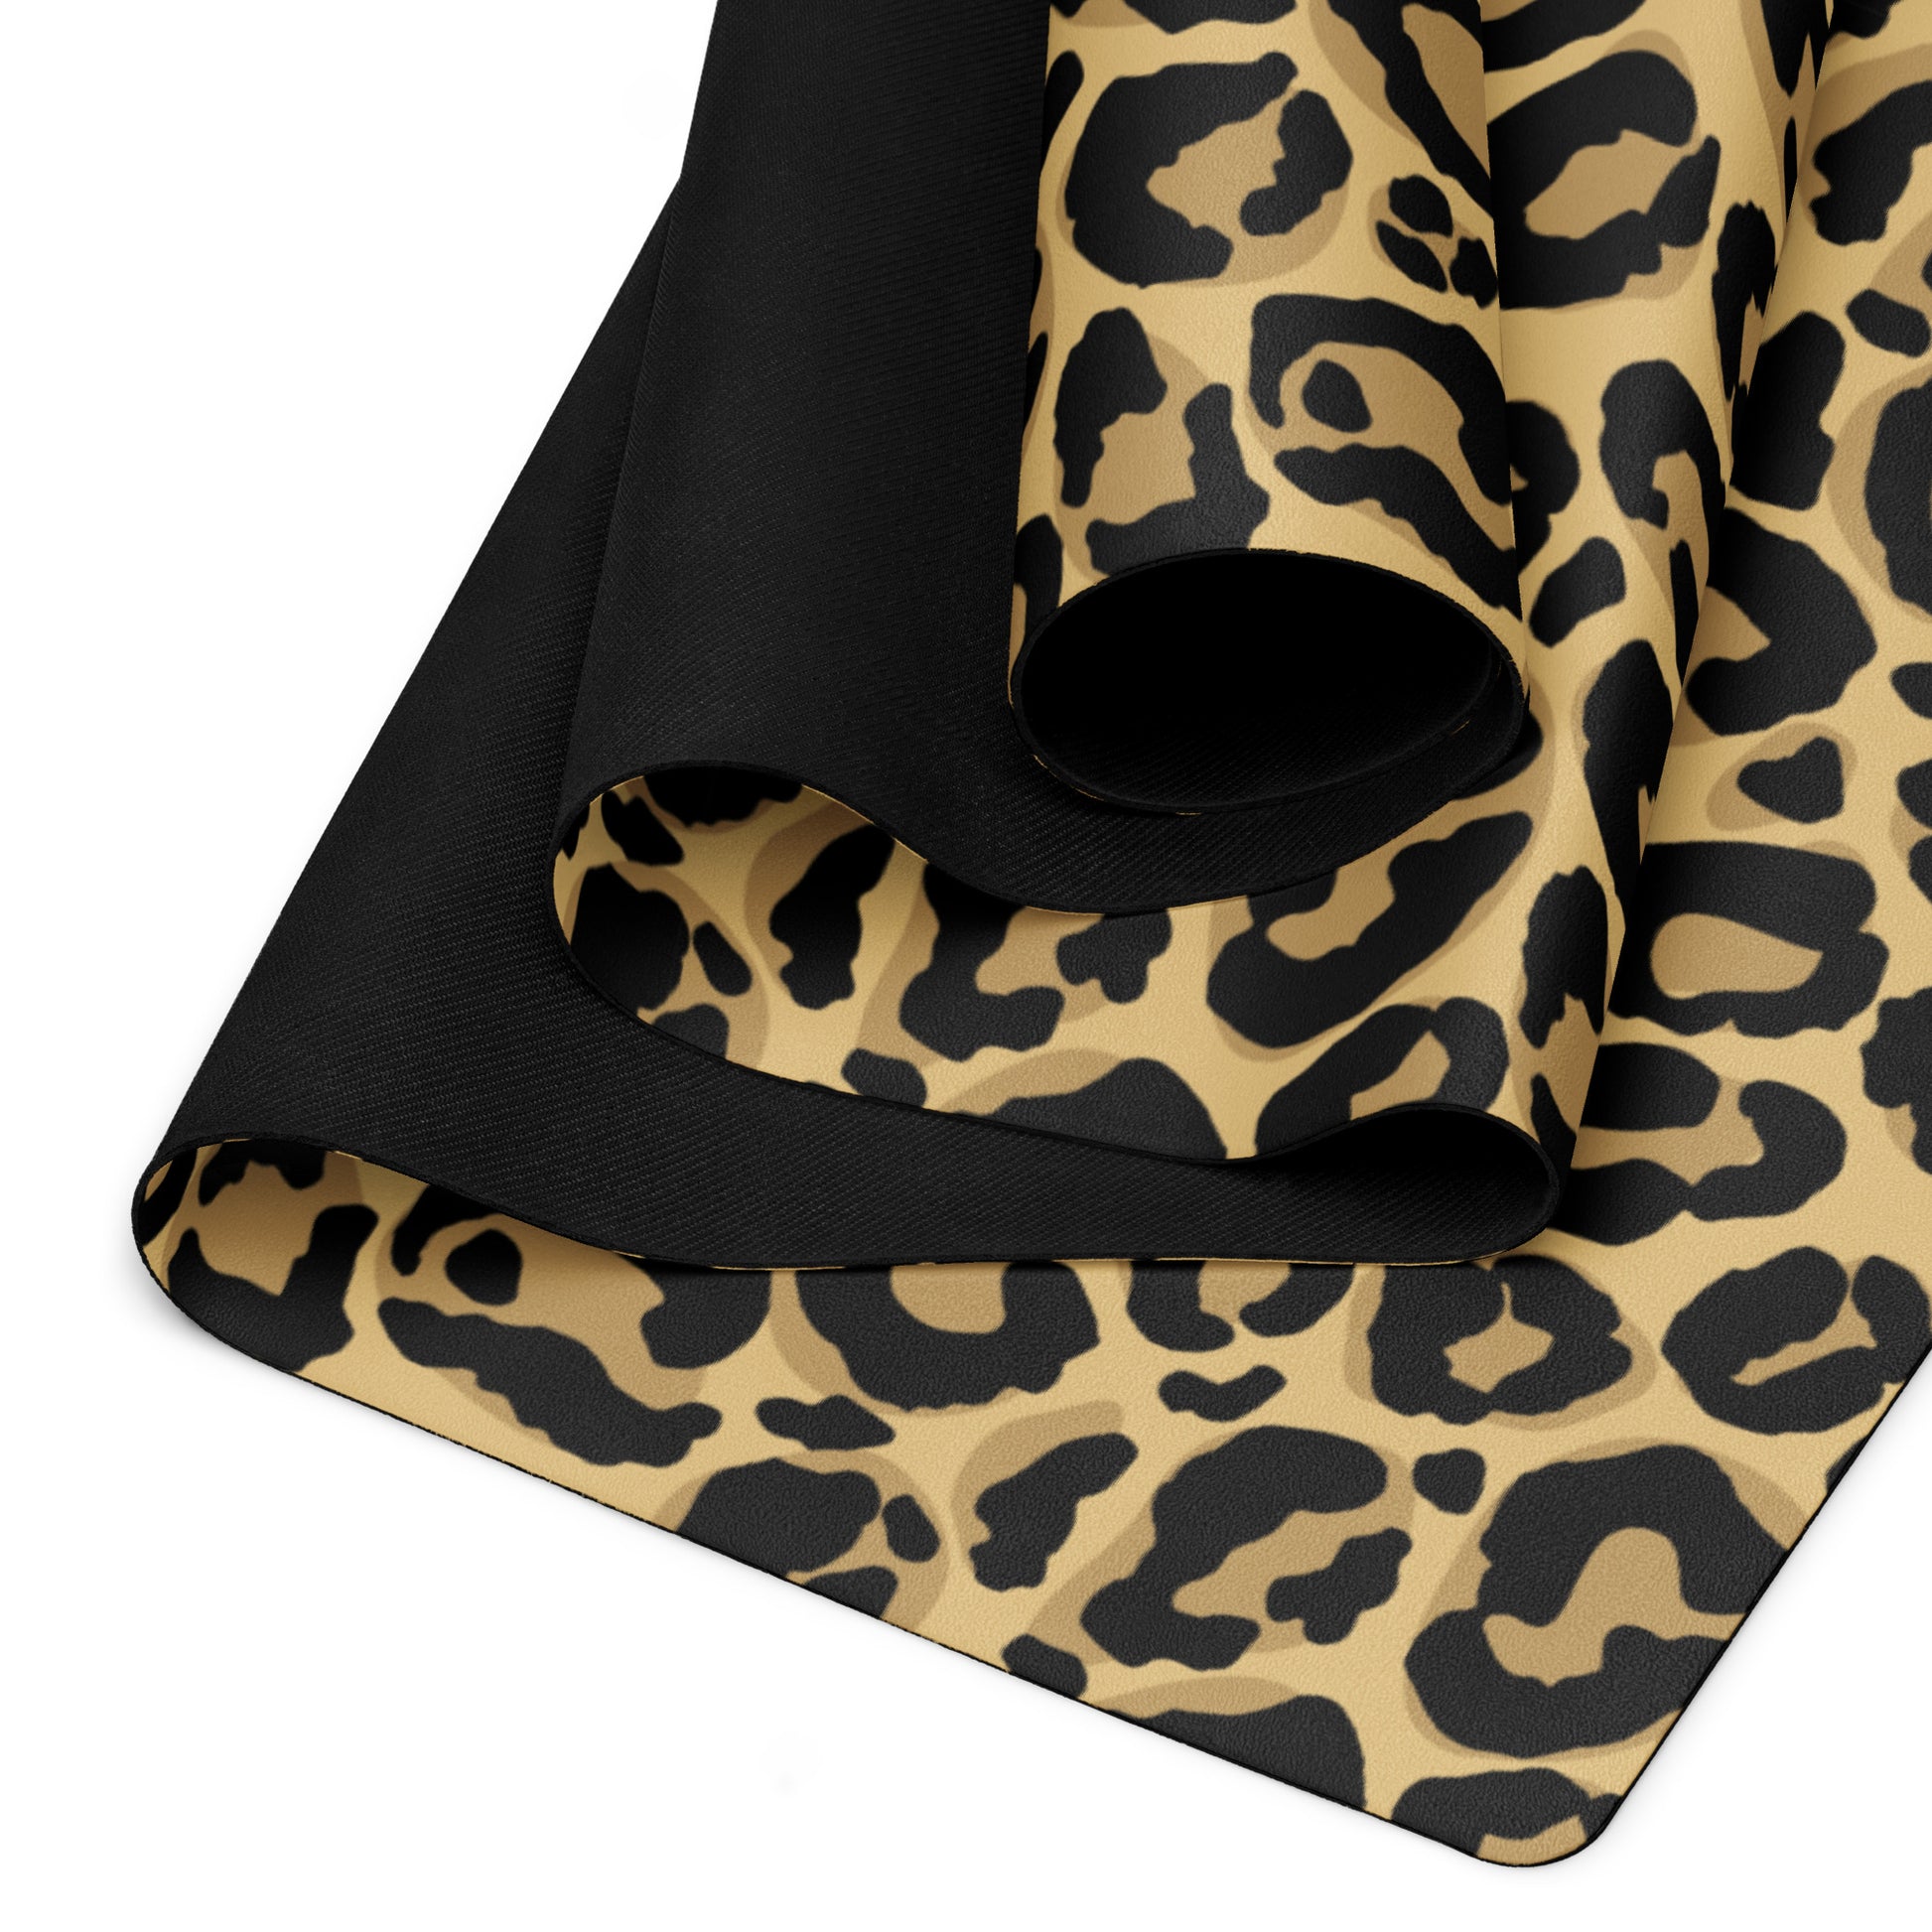 DOJO - Leopard Print Yoga Mat – The DOJO